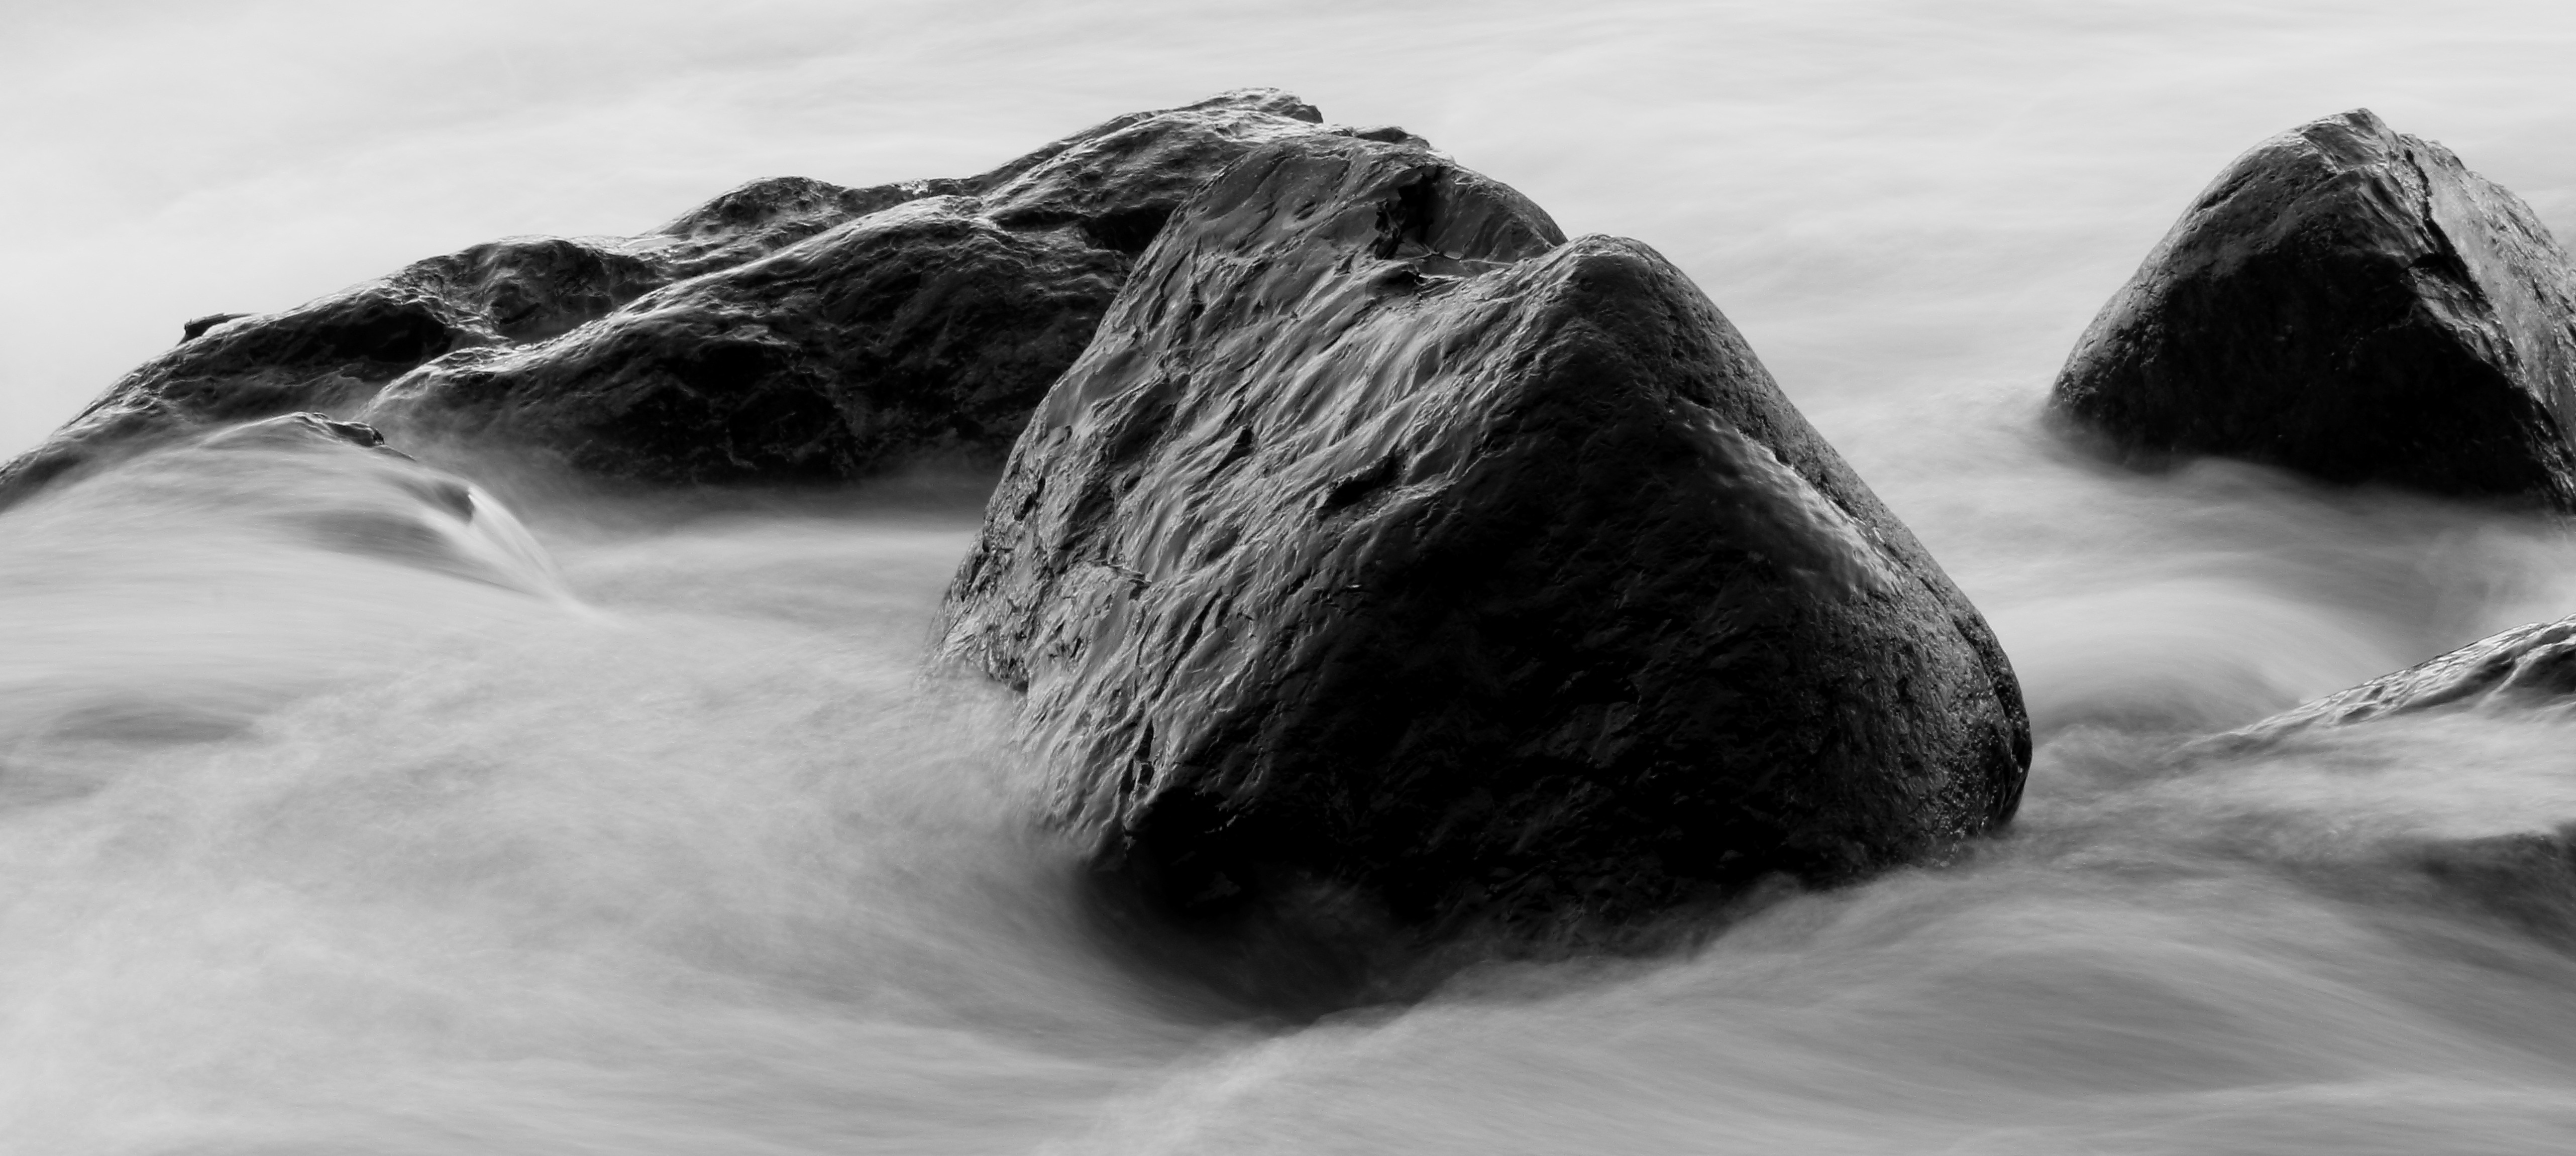 Черный камень черной воде. Камни в воде. Черно белые волны. Черно белый камень. Вода из камня.